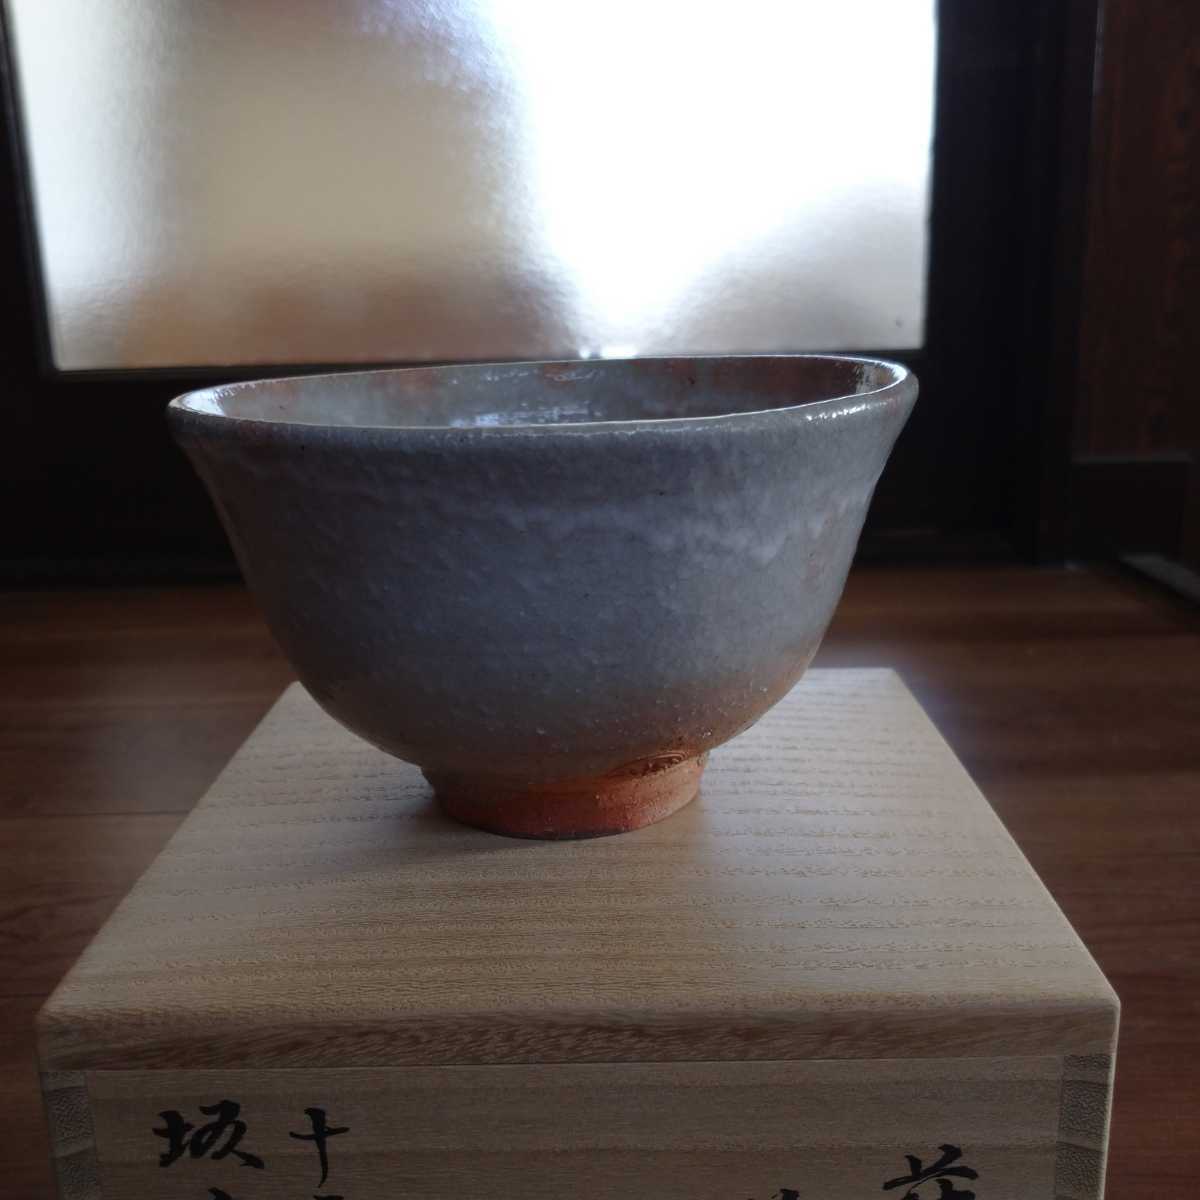 萩焼茶碗 希少 宗家１２世坂高麗左衛門(熊峰) 海外最新 51.0%OFF